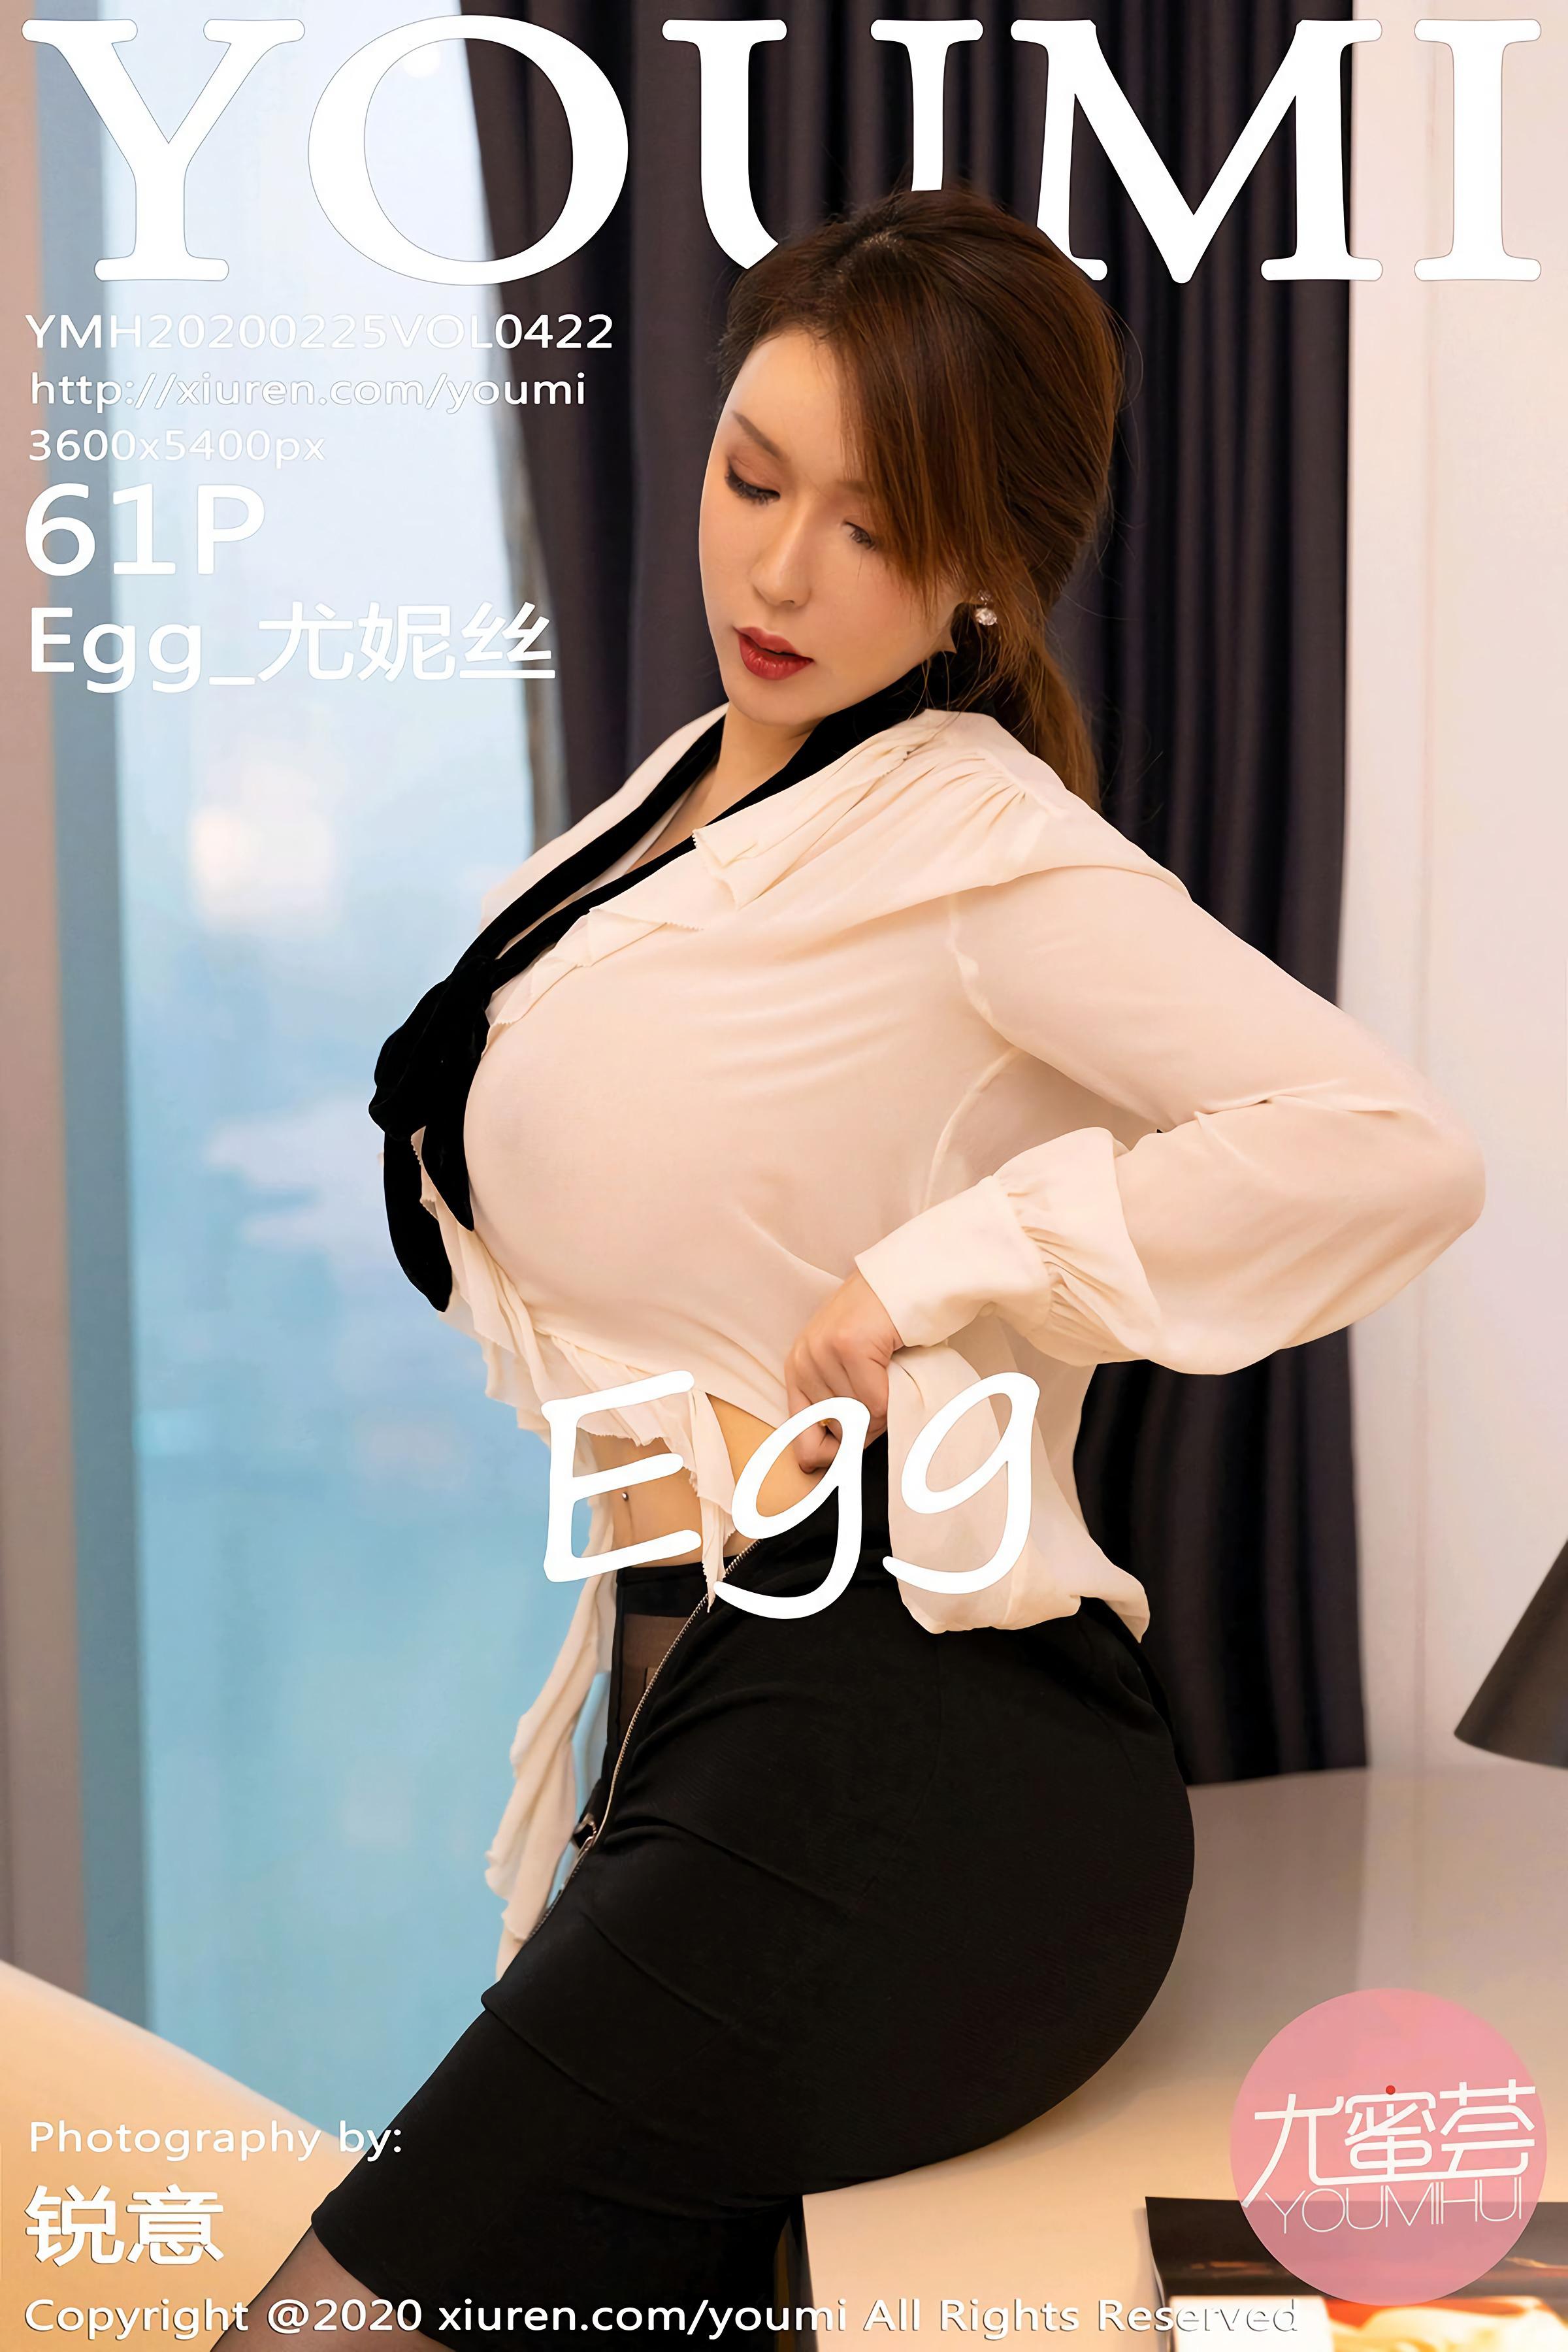 Youmi 尤蜜荟 2020.02.25 VOL.422 Egg尤妮丝 - 46.jpg